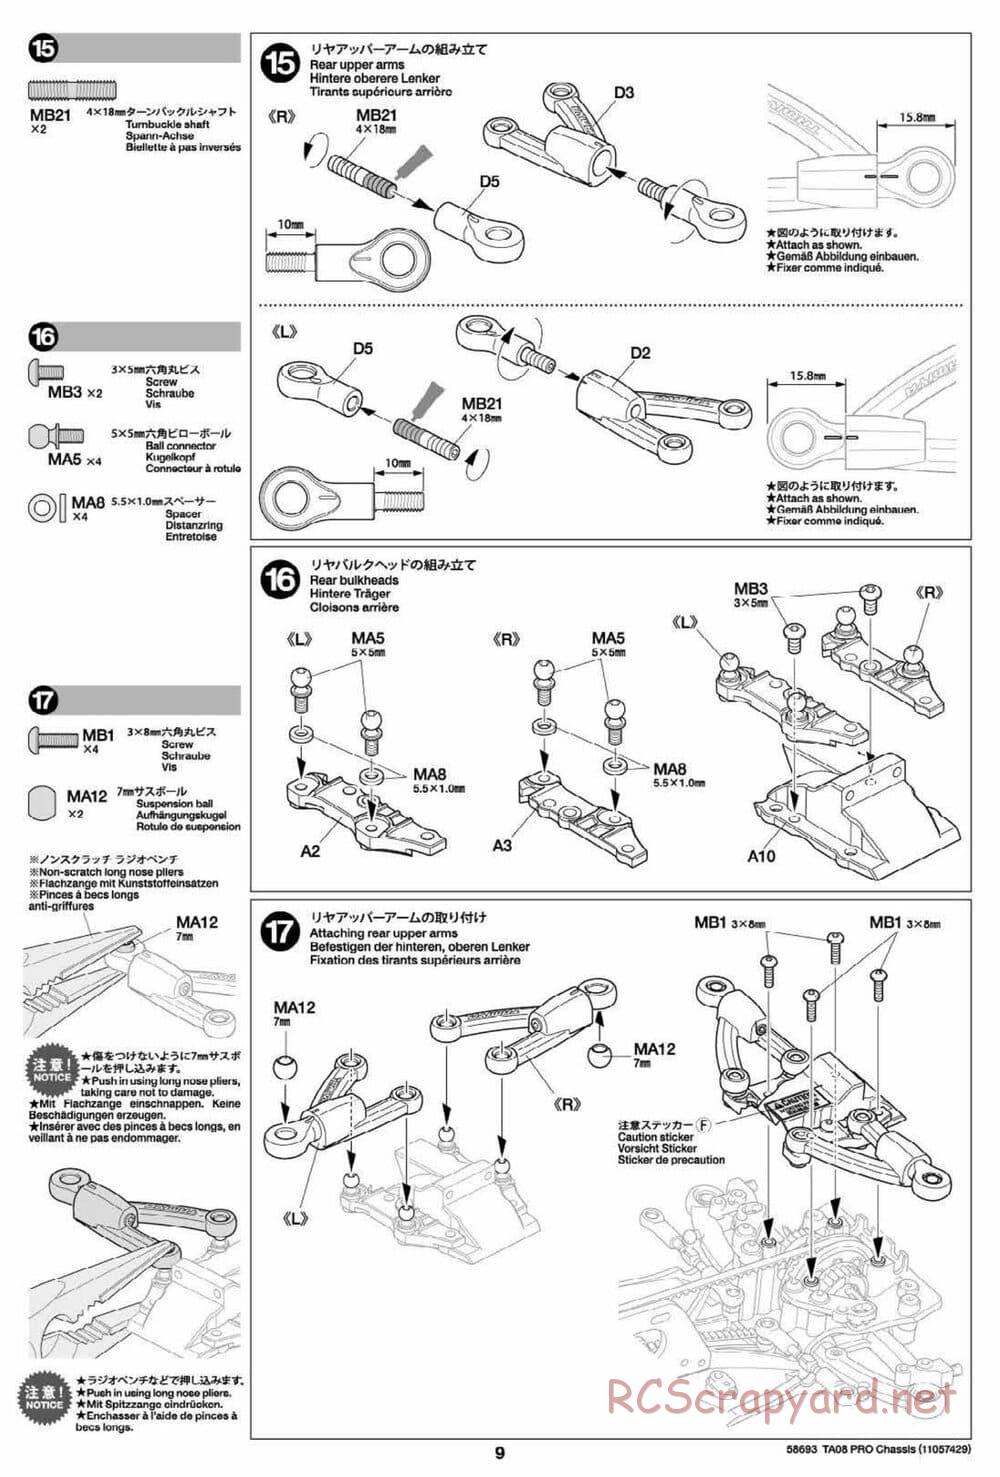 Tamiya - TA08 Pro Chassis - Manual - Page 9